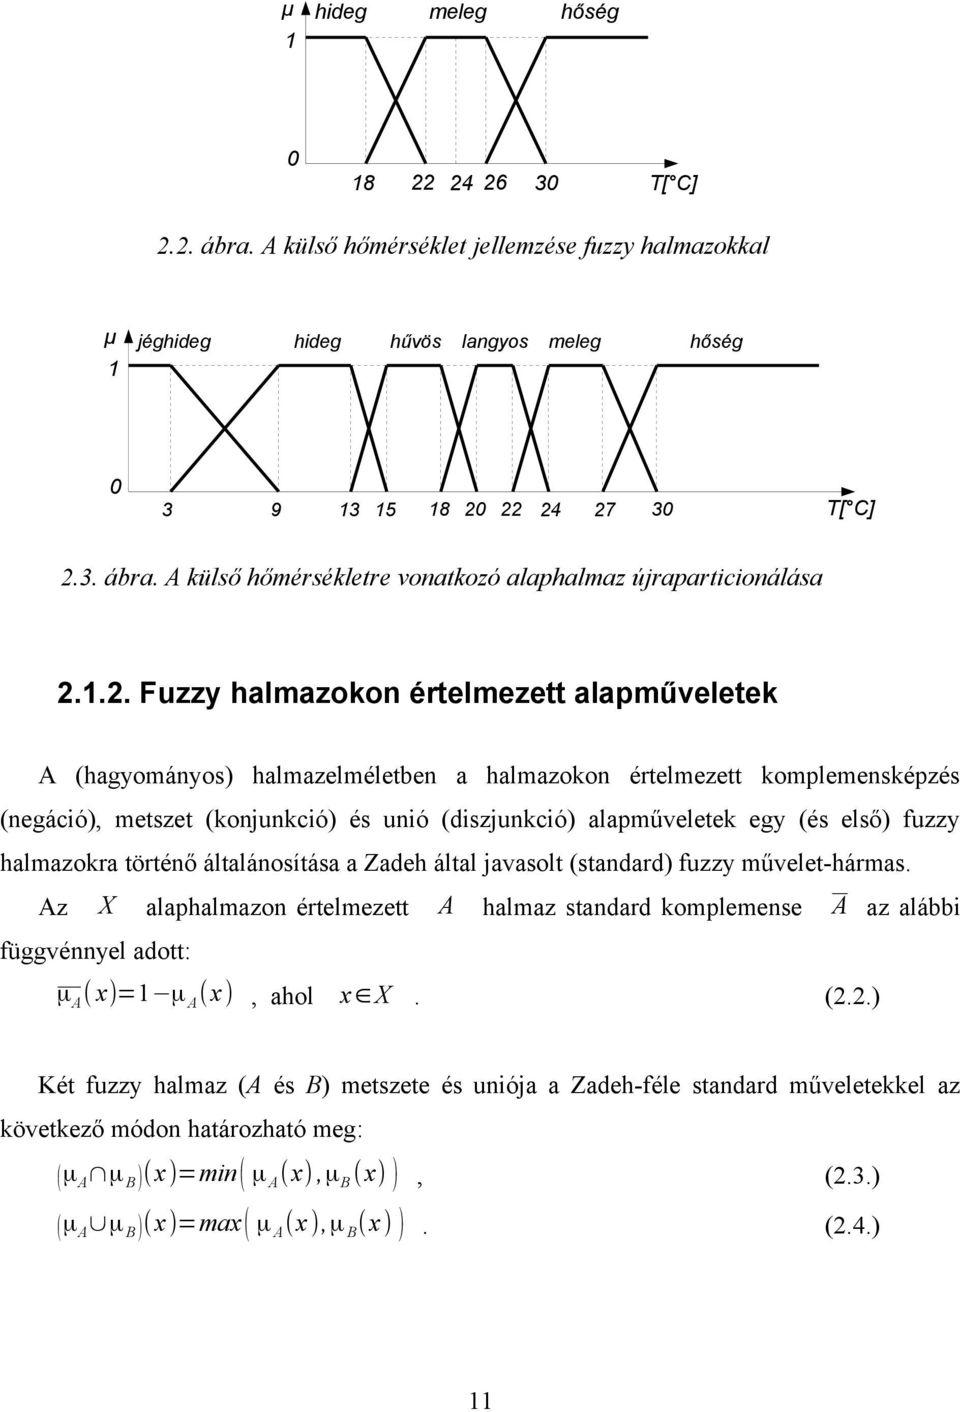 első) fuzzy halmazokra történő általánosítása a Zadeh által javasolt (standard) fuzzy művelet-hármas.